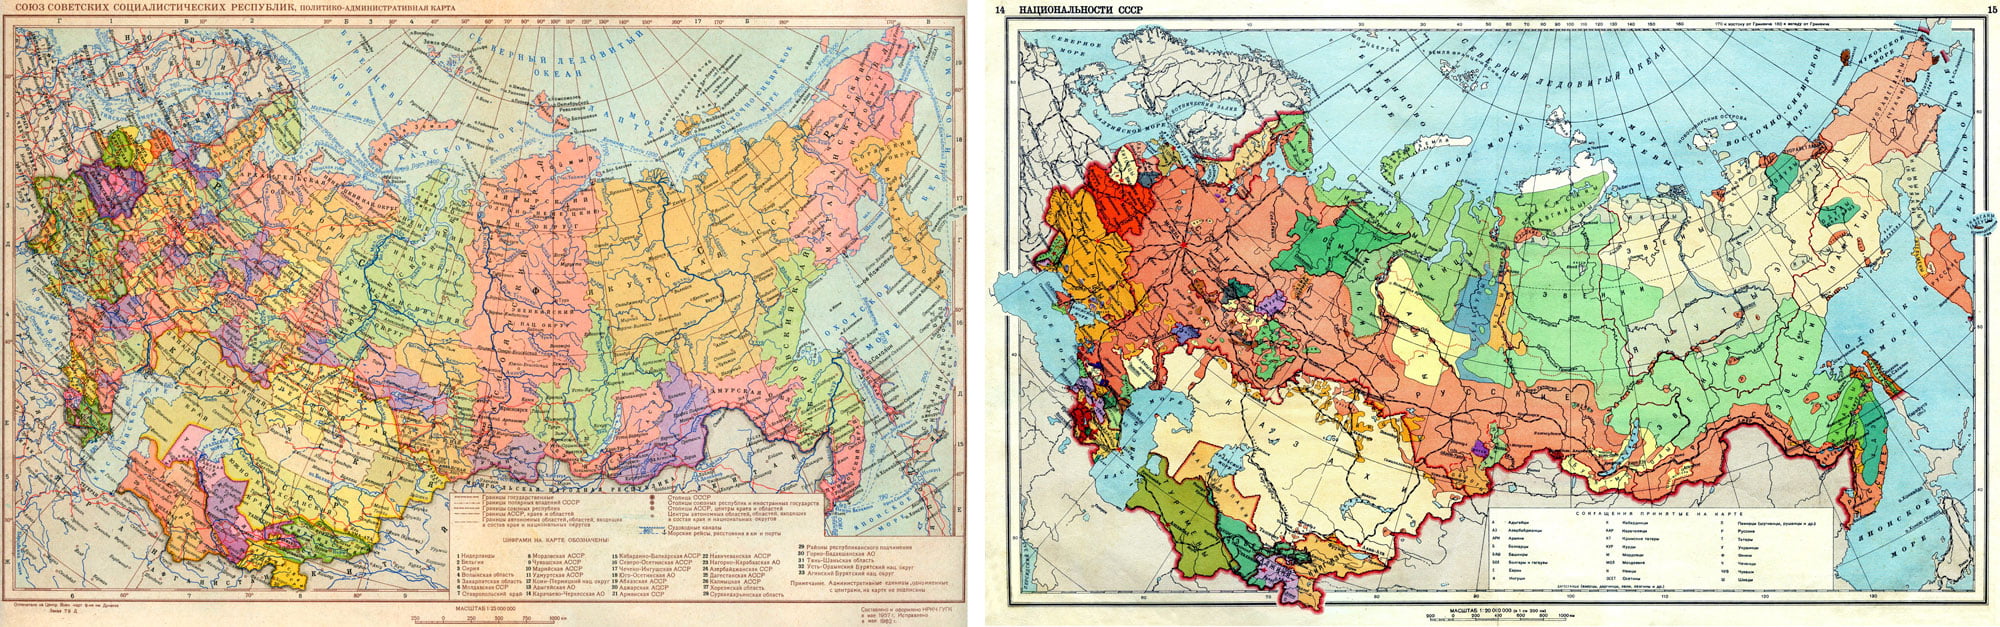 Die administrativen Grenzen der Sowjetunion stimmten oft mit den ethnischen Grenzen überein.